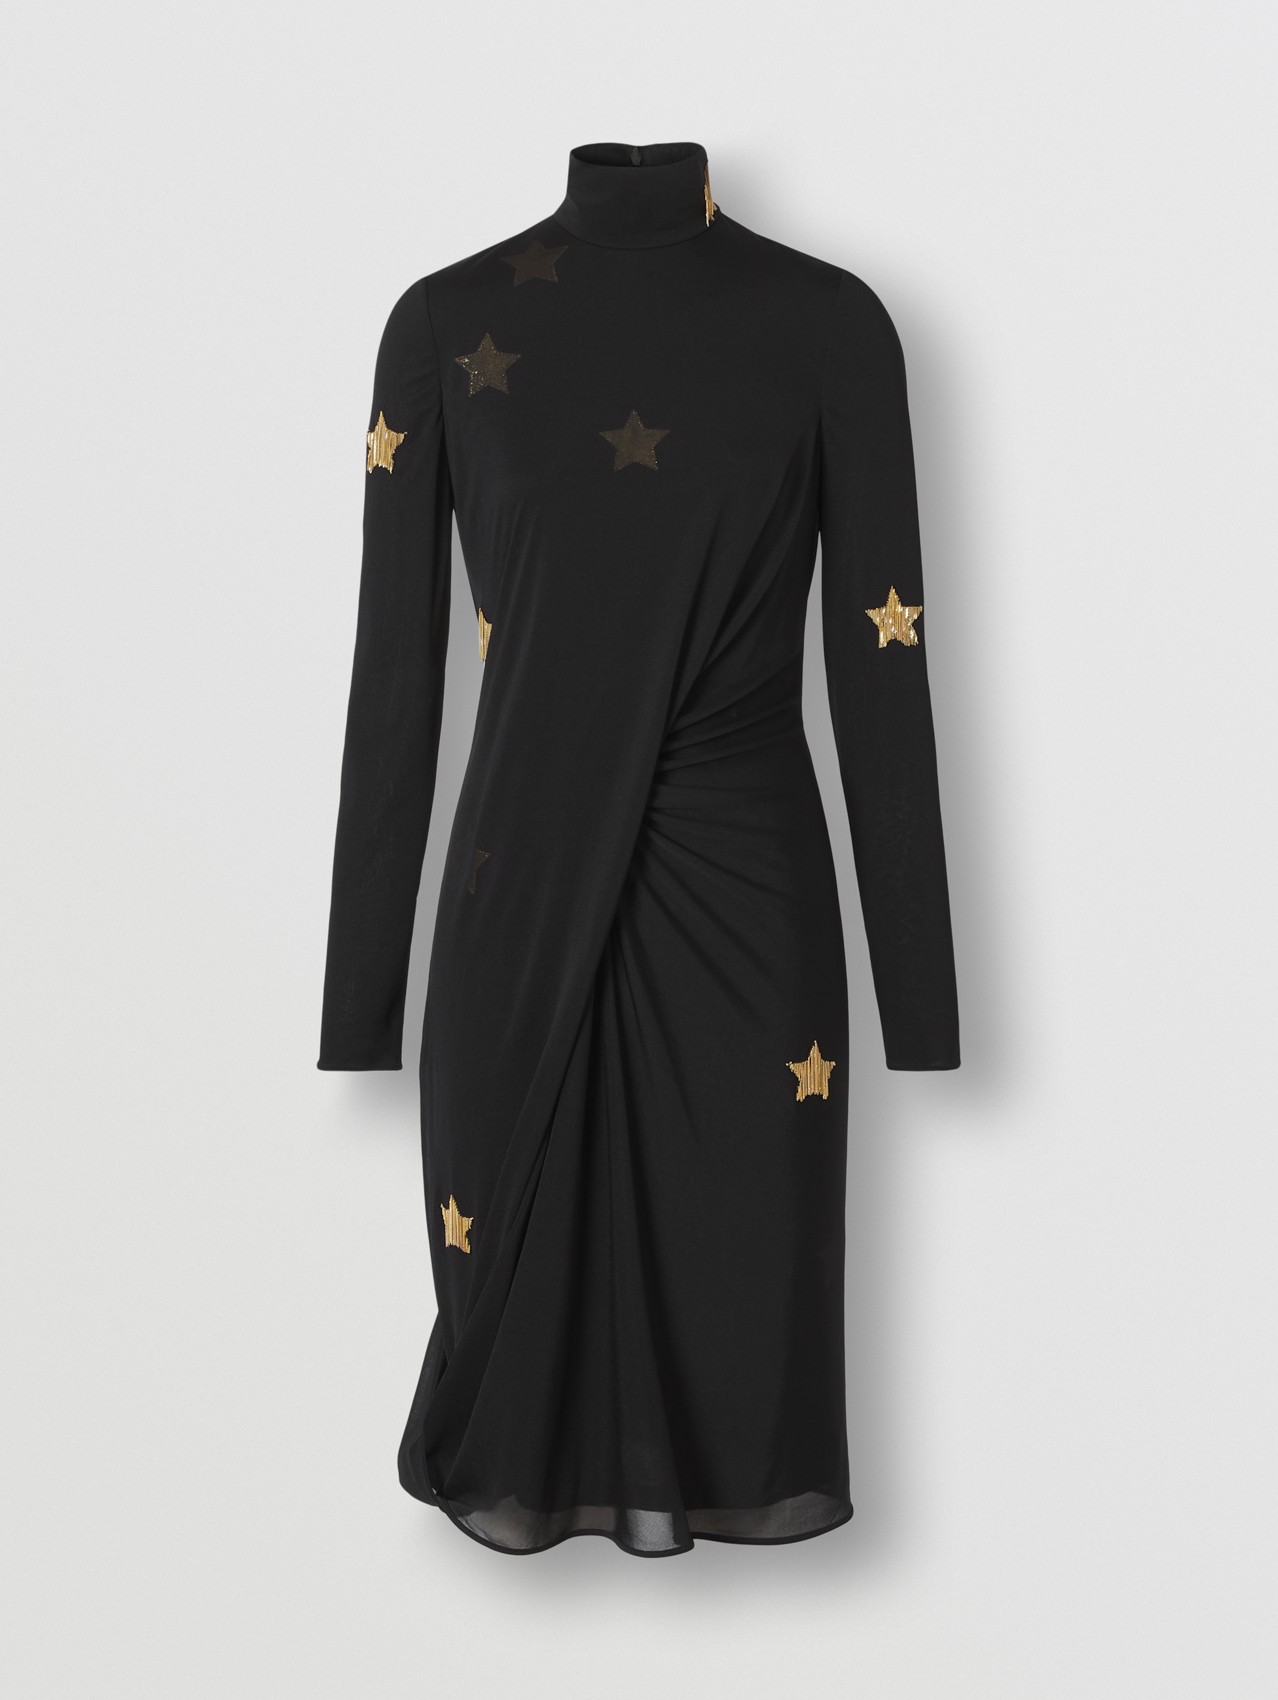 Langärmeliges Kleid aus Seidenviskose mit Sternenmotiv (Schwarz)